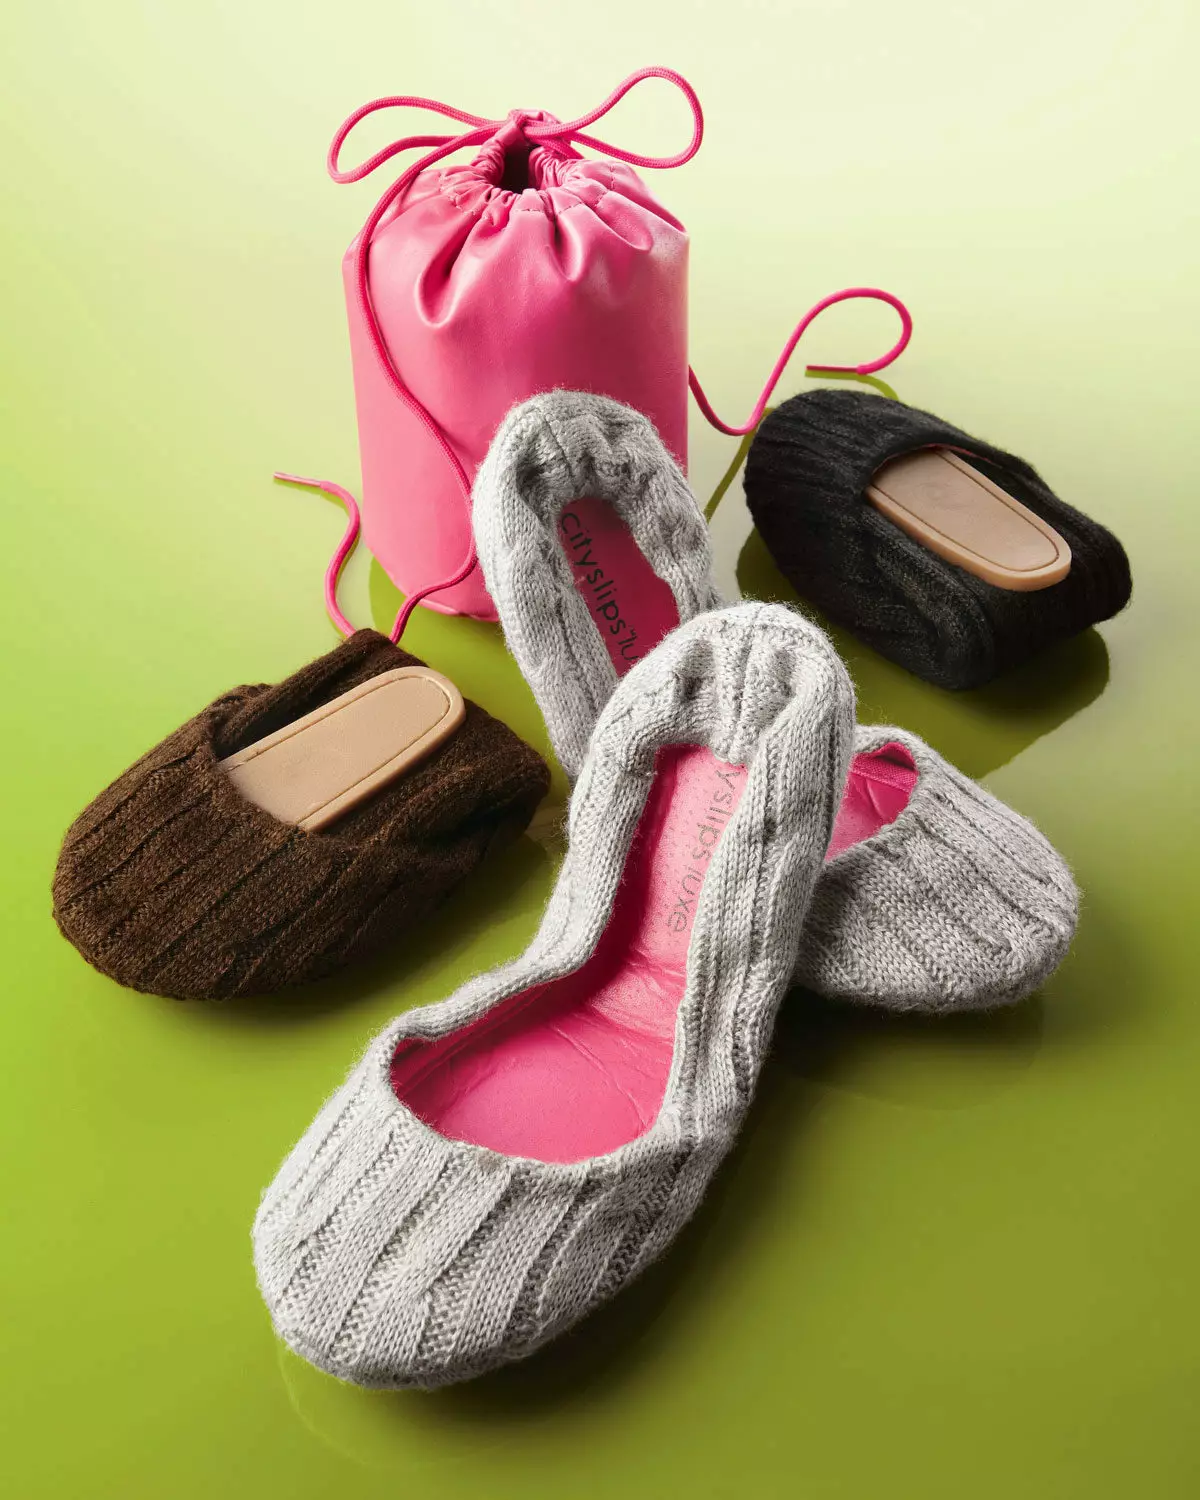 ဇာတိ slippers (72 ဓာတ်ပုံများ): တစ် ဦး တည်းသော, လှပသော, လှပသော, ရိုးရှင်းသောအခန်းများ - Sneaker, ဂျပန်, ဂျပန်, ဂျပန်, 14259_46